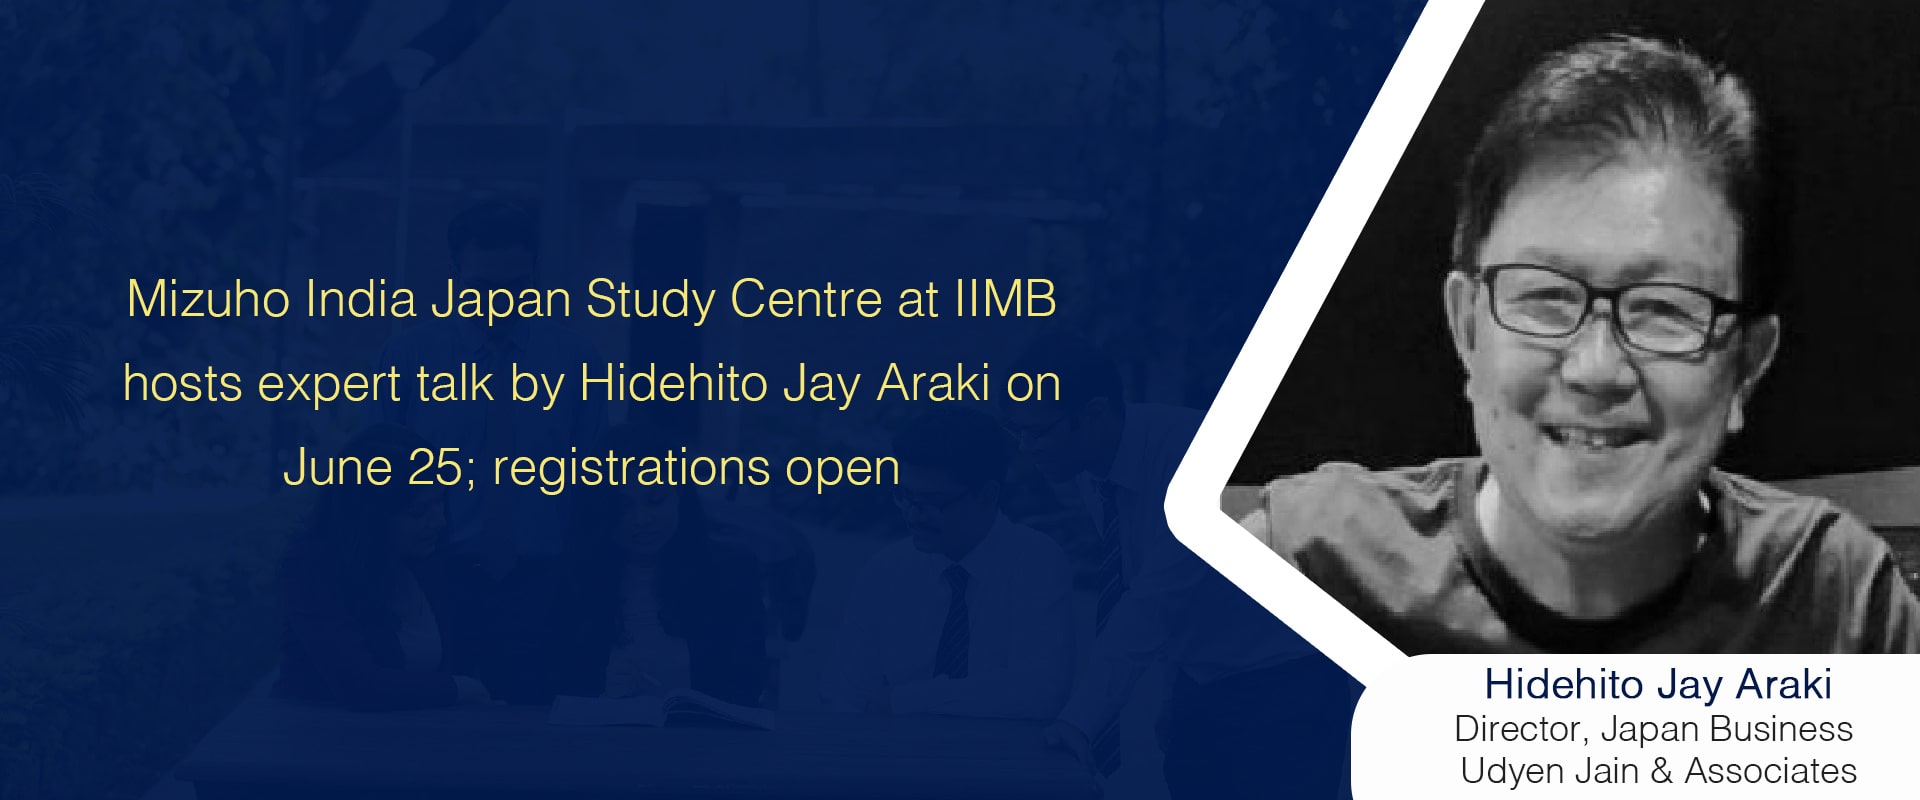 Mizuho India Japan Study Centre at IIMB hosts expert talk by Hidehito Jay Araki on June 25